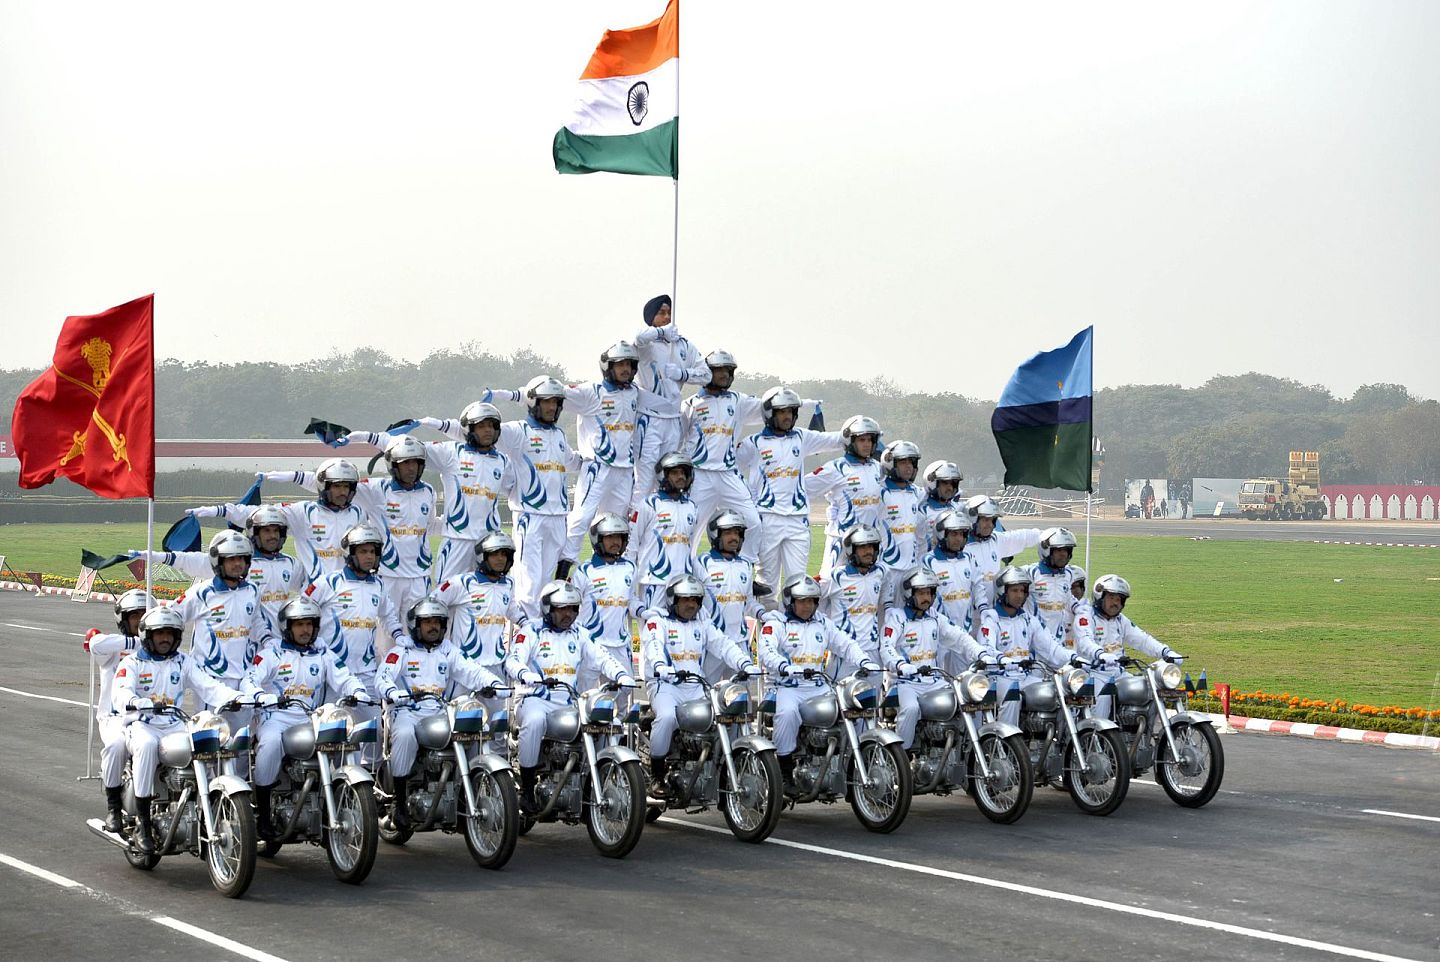 当新德里要强调装备的国产化时，很多对印度军力稍有人士的观察家难免会哑然失笑，并瞬间联想起印度每年国庆阅兵期间的摩托表演。 （Getty）